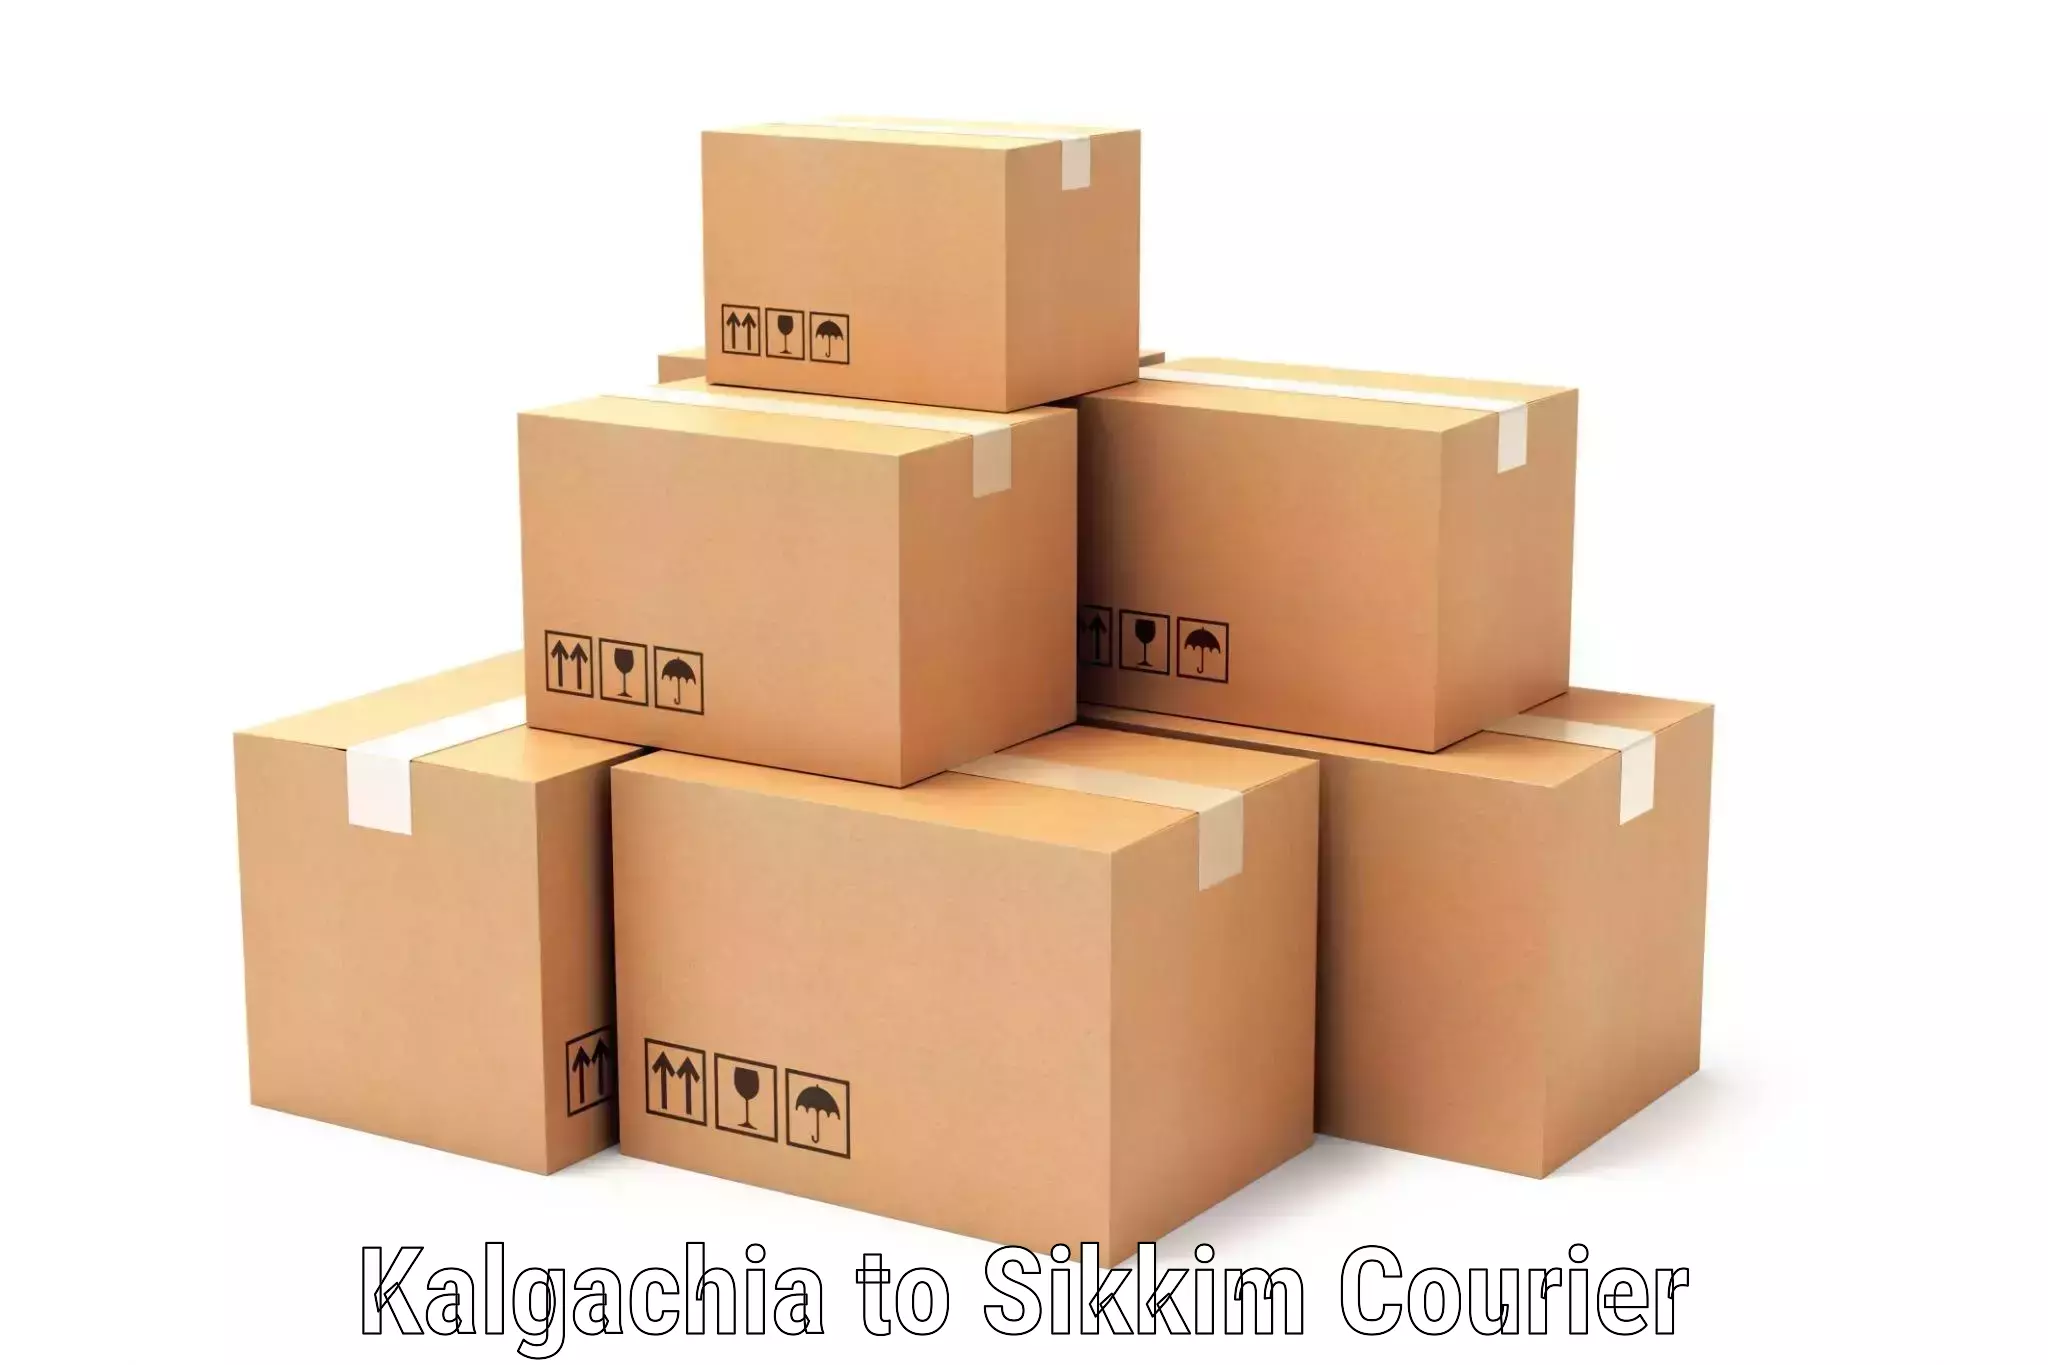 Full-service courier options Kalgachia to Sikkim